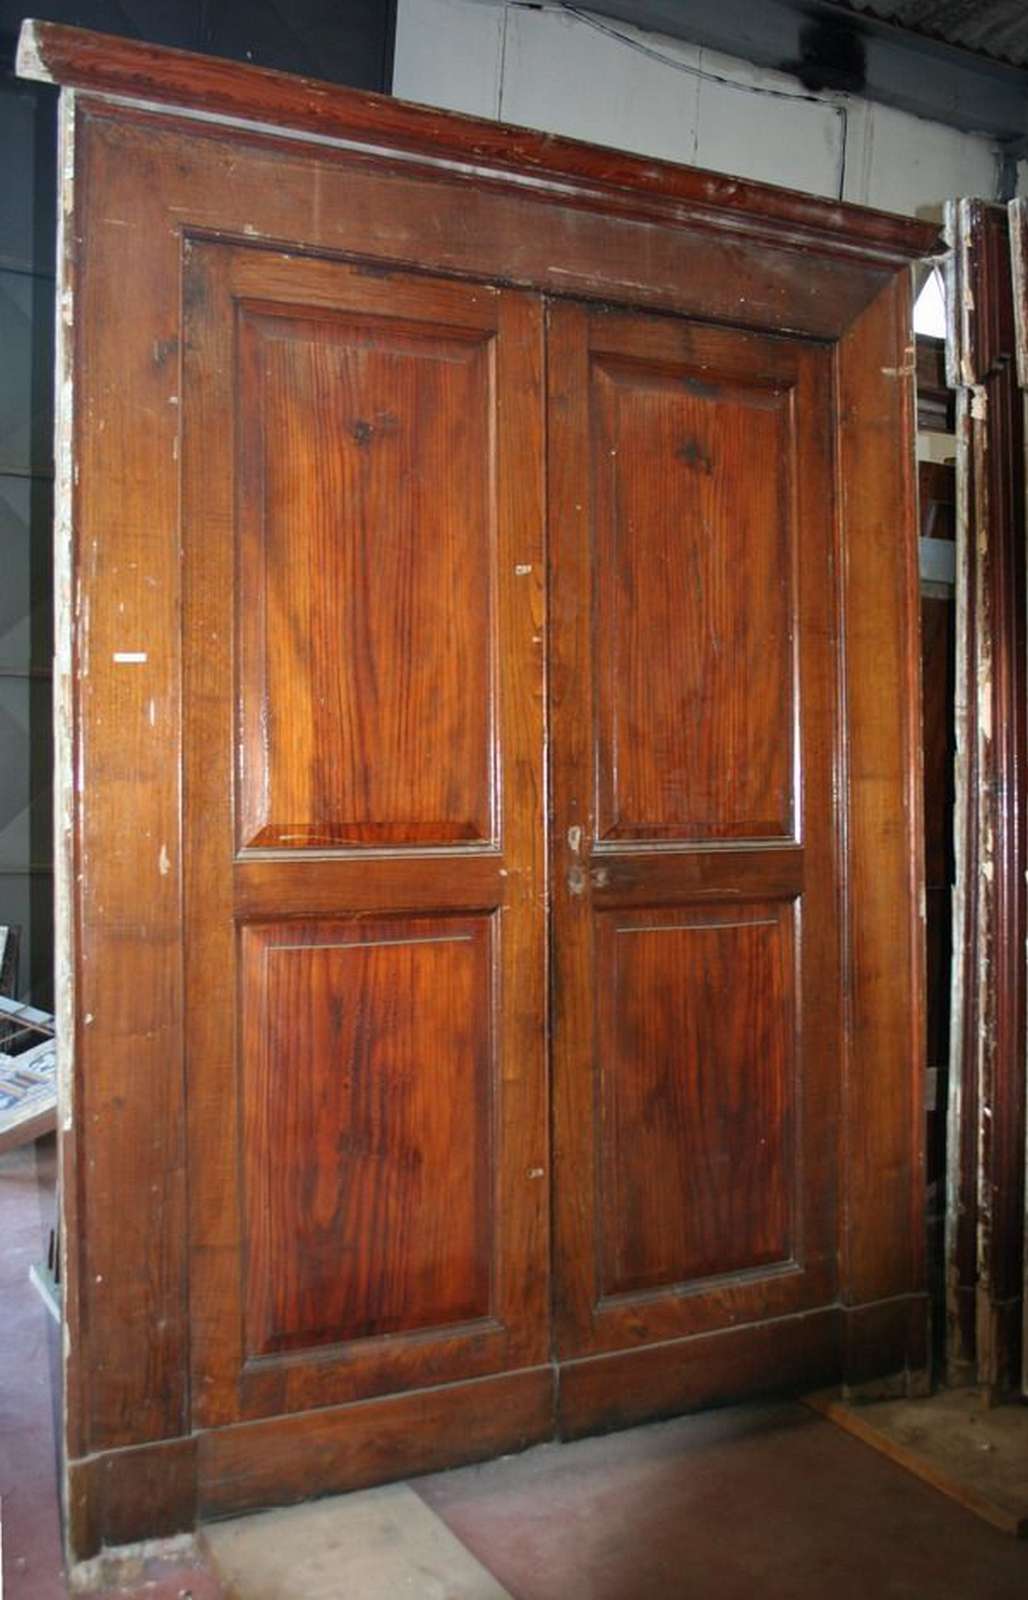 Antica porta in legno. Epoca 1800. - Porte in Legno - Porte Antiche - Prodotti - Antichità Fiorillo